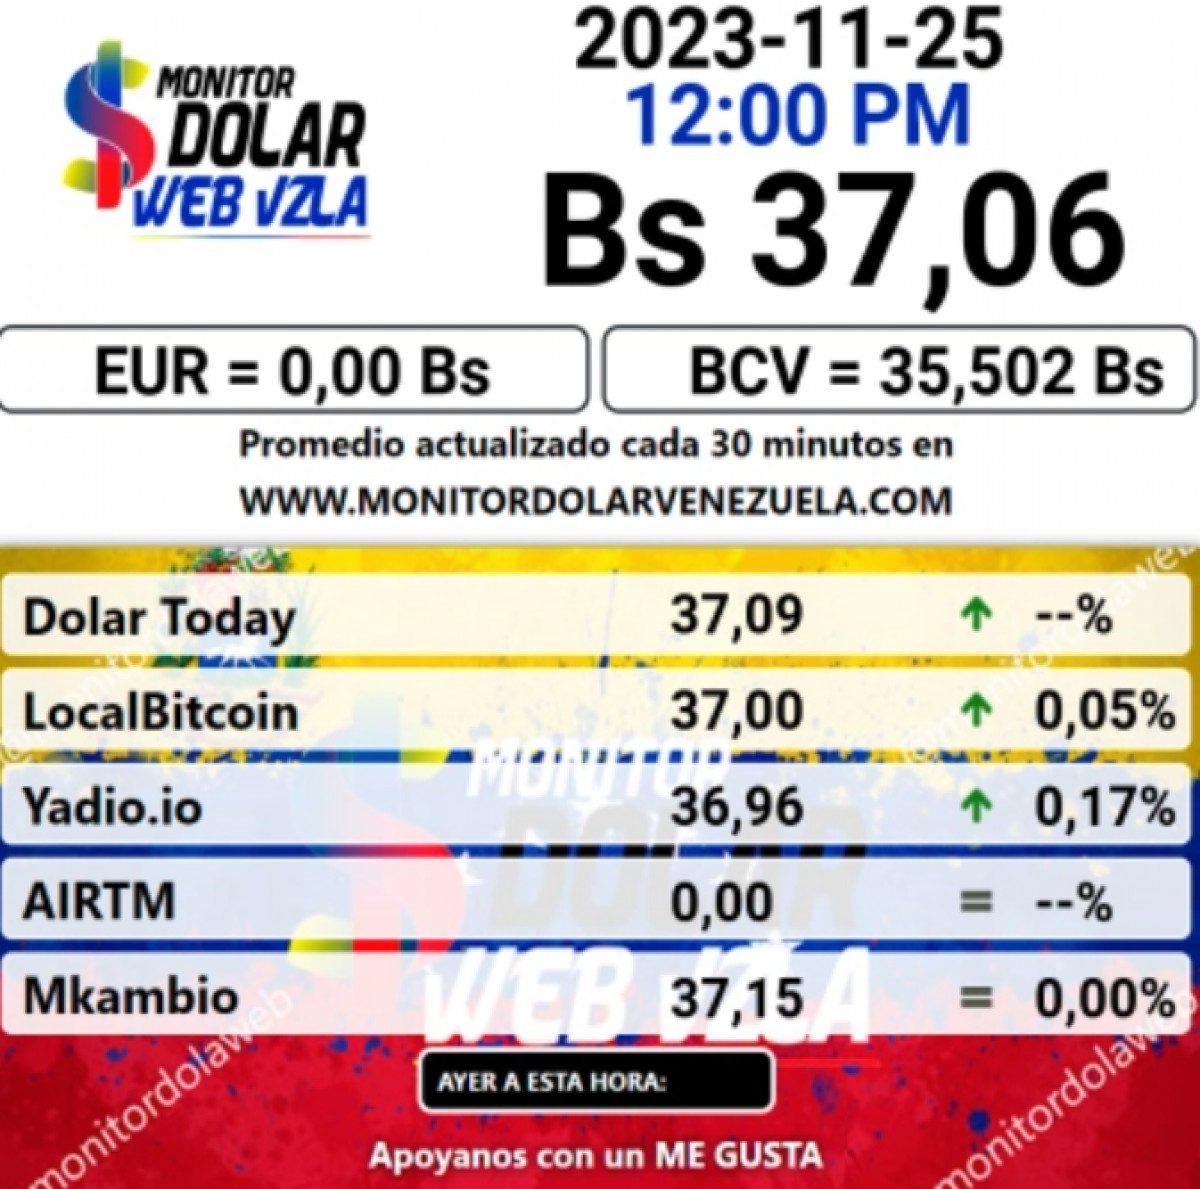 dolartoday en venezuela precio del dolar este sabado 25 de noviembre de 2023 laverdaddemonagas.com monitor1